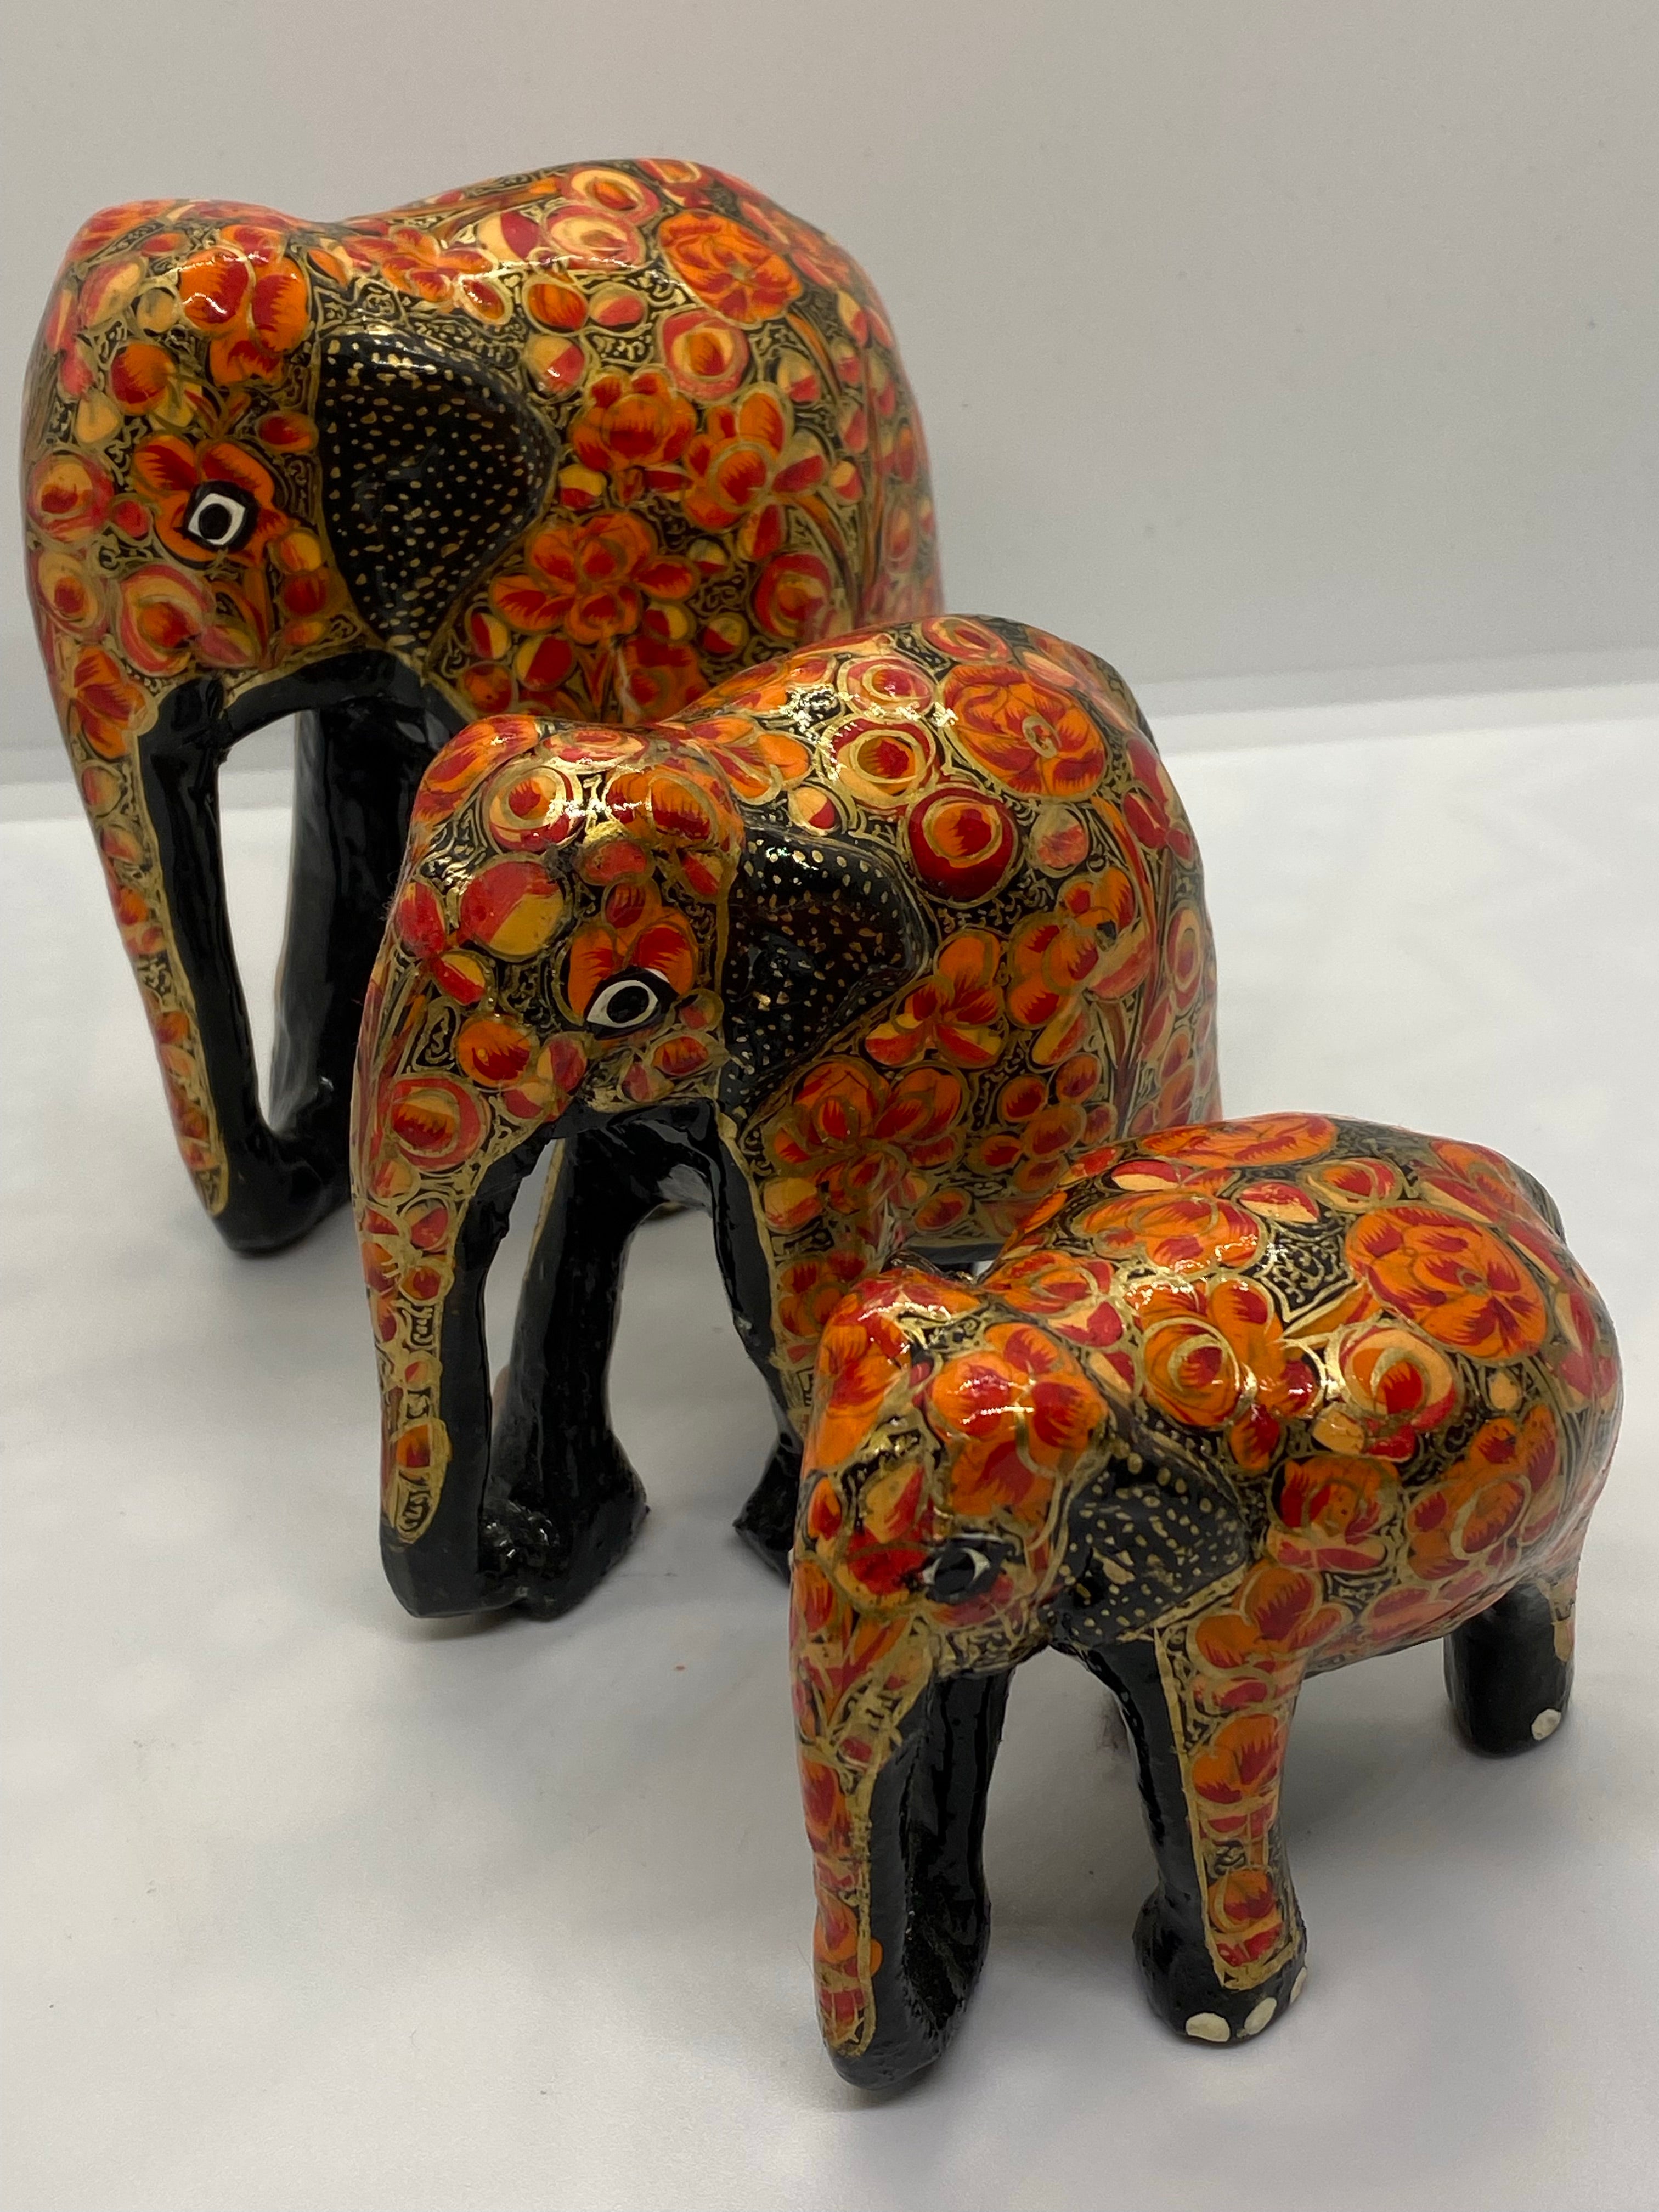 Handmålade trä elefanter